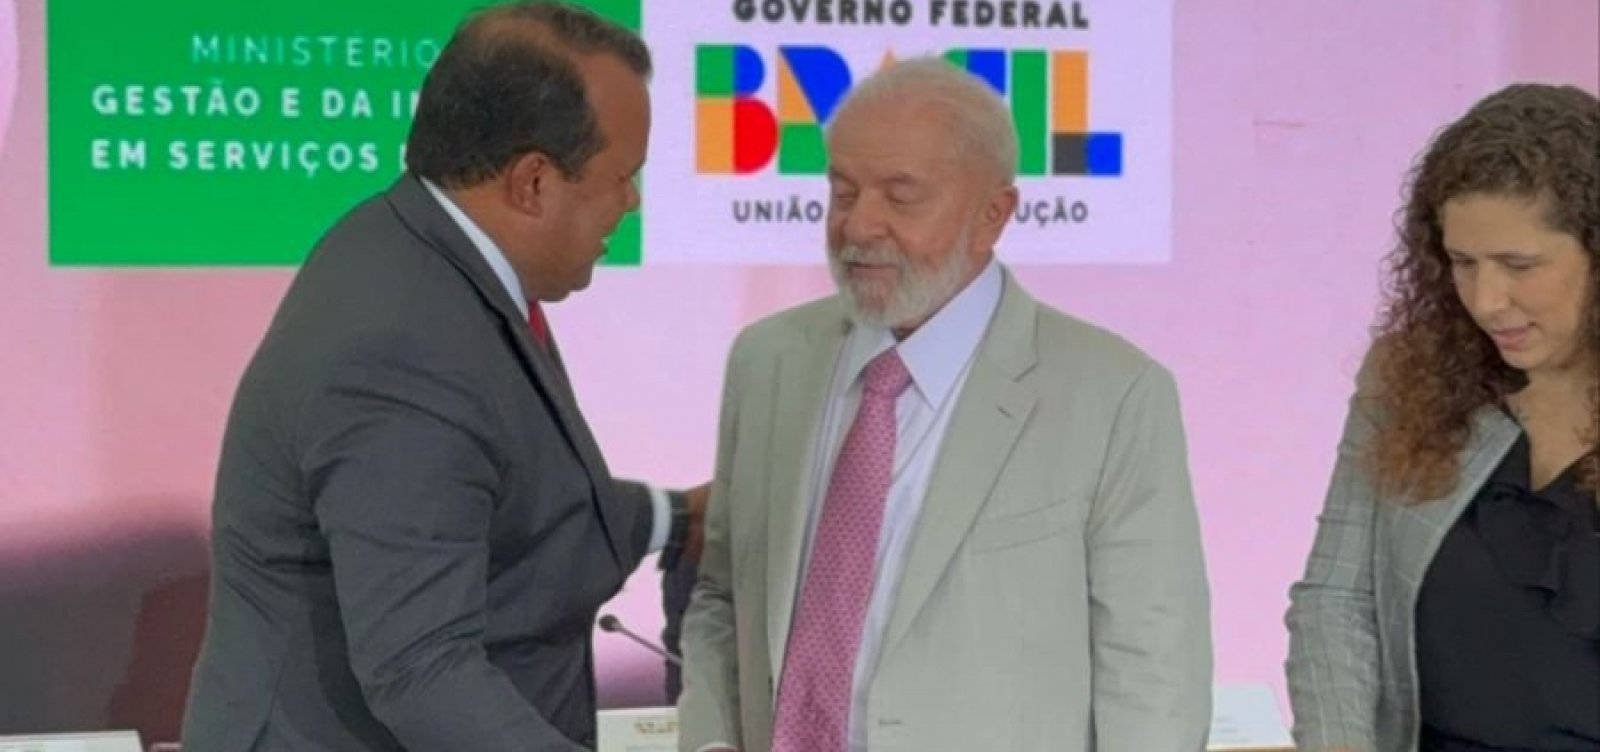 Governador em exercício, Geraldo Júnior participa de evento ao lado de Lula em Brasília